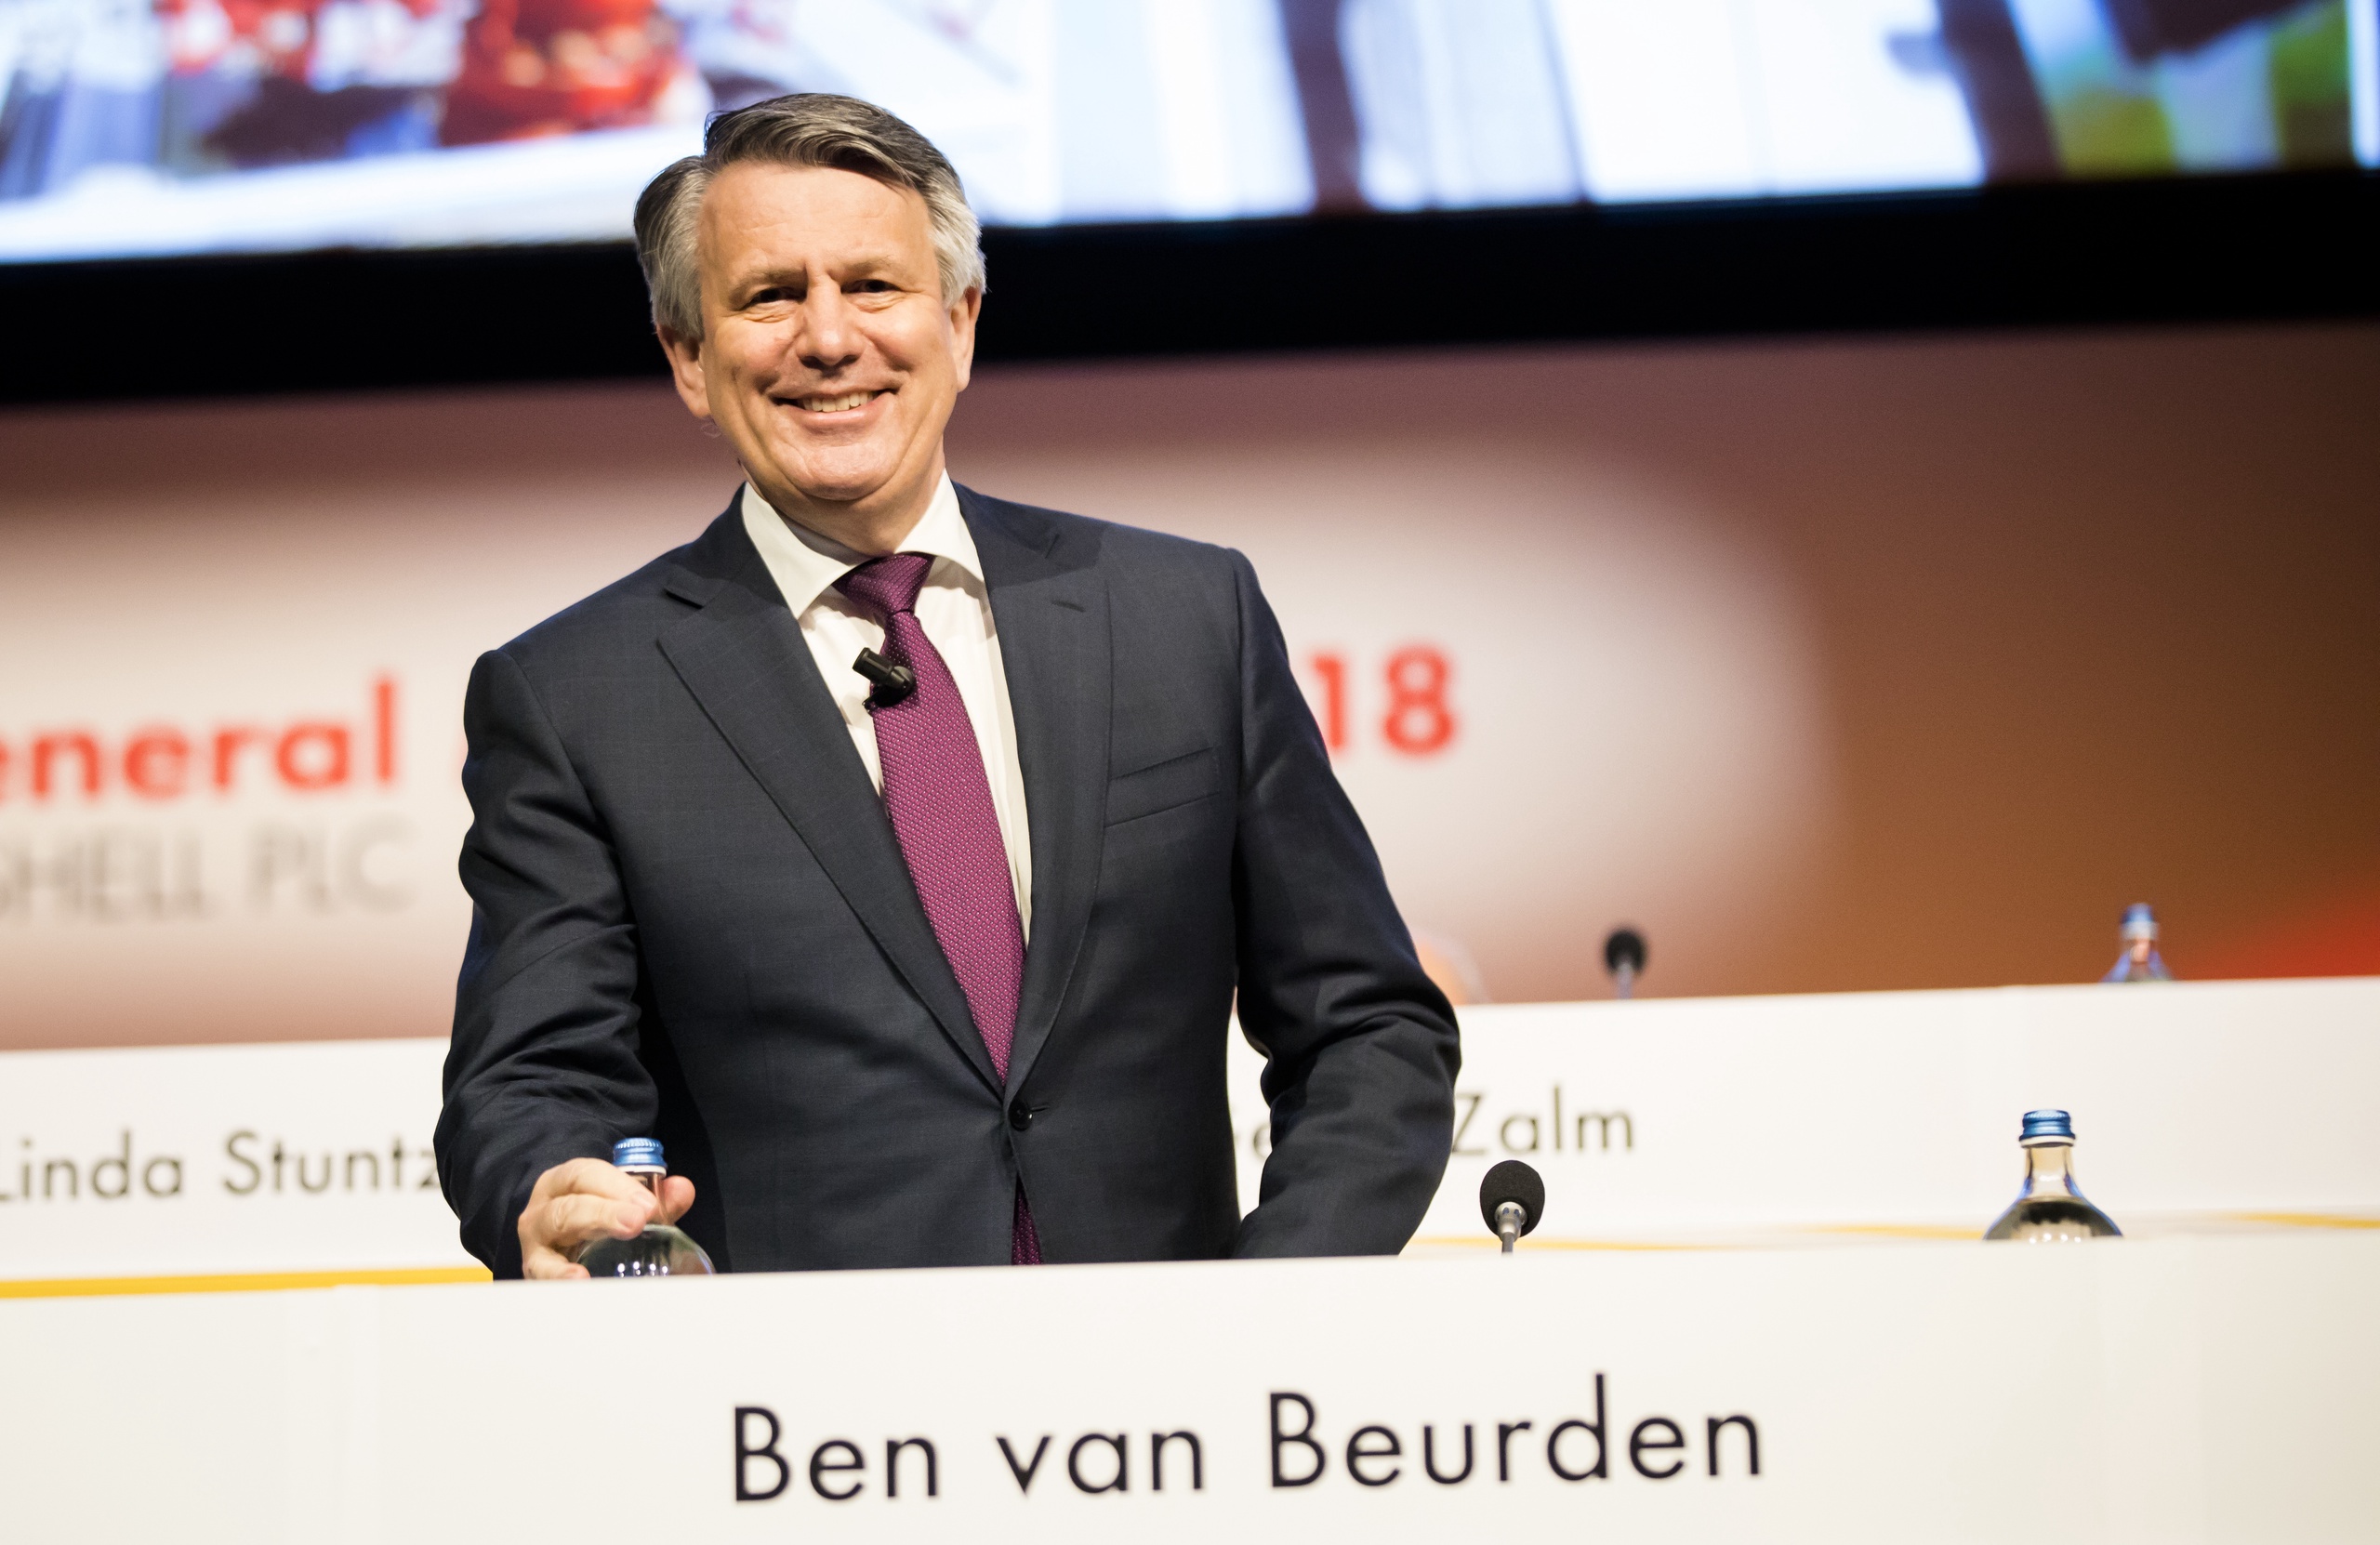 DEN HAAG - Ben van Beurden CEO van Royal Dutch Shell voor aanvang van de aandeelhoudersvergadering in het Afas Circustheater in Scheveningen. Vakbondsafgevaardigden uit tal van landen dringen erop aan dat Shell een einde maakt aan flexwerk. ANP BART MAAT